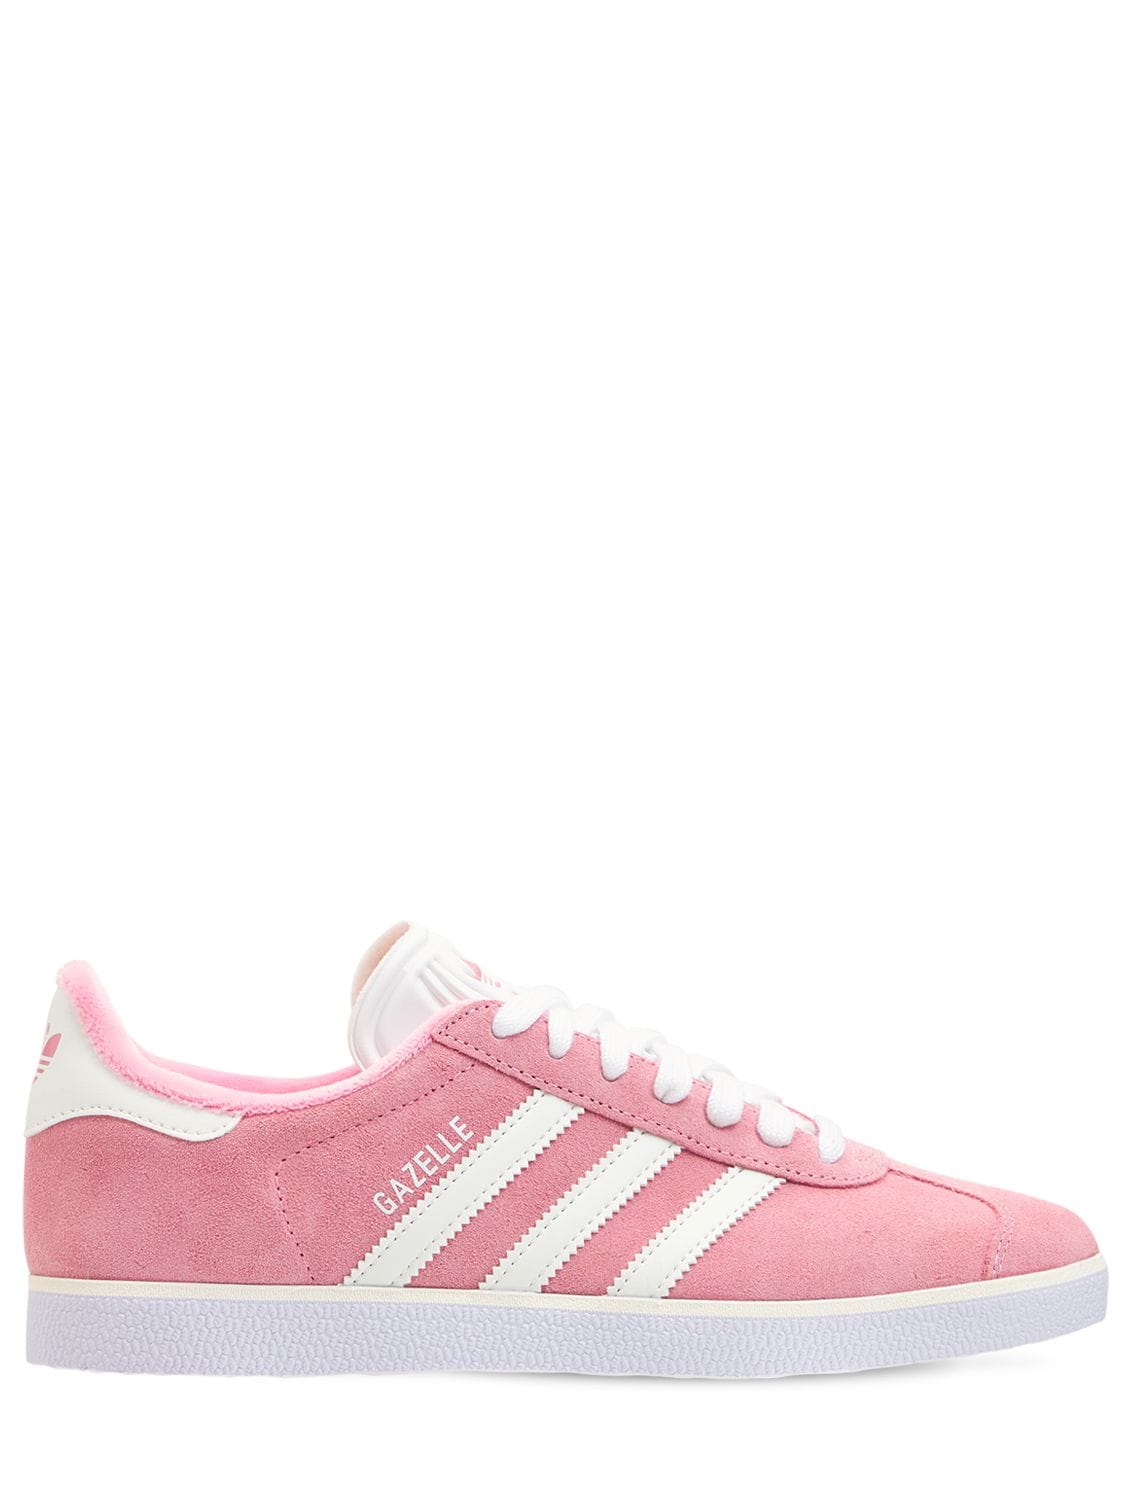 Adidas Originals - Gazelle sneakers - Pink | Luisaviaroma